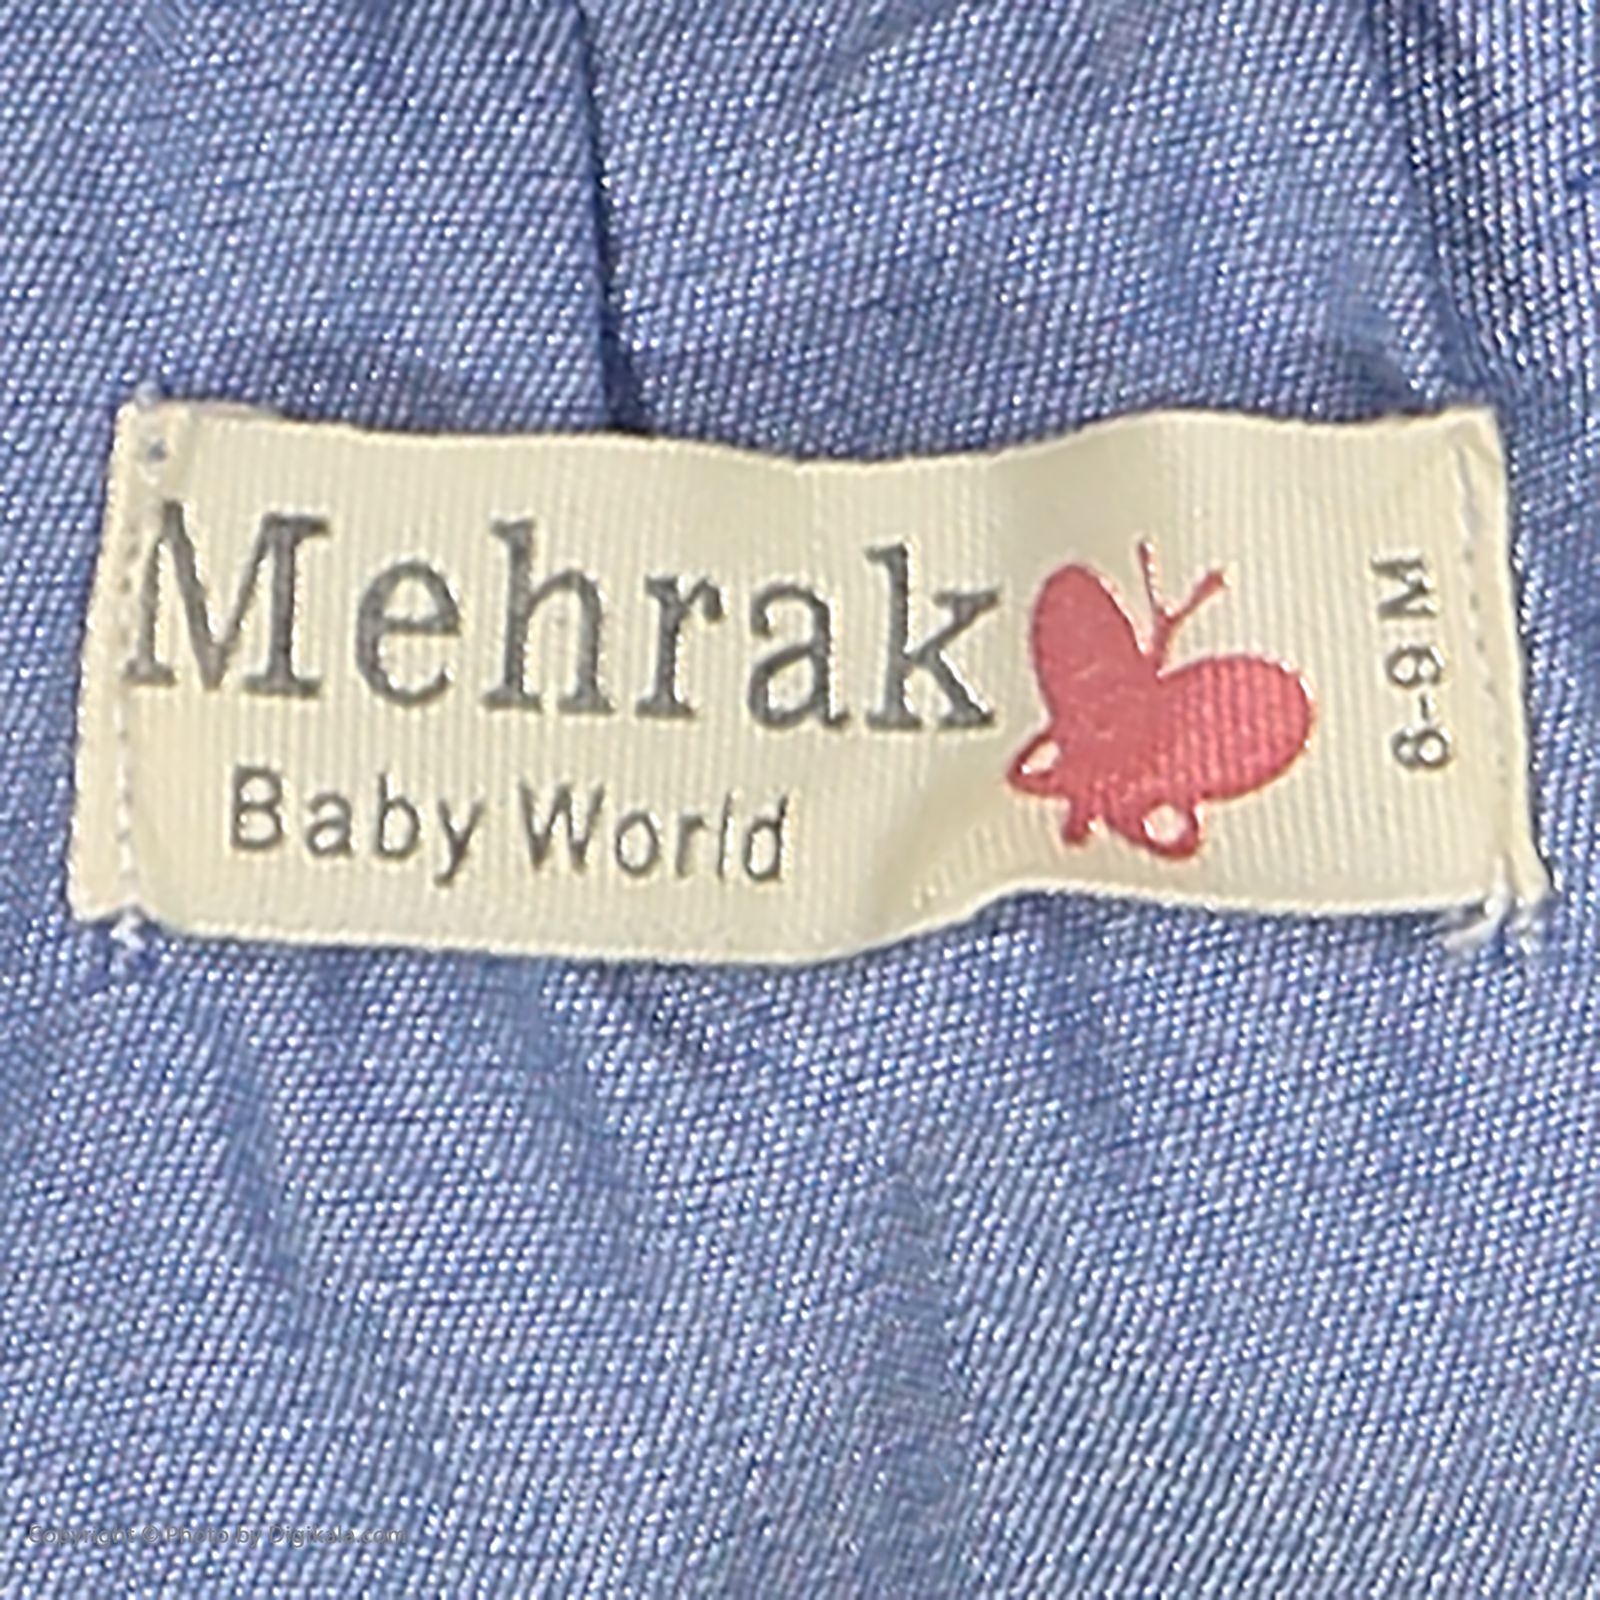 ست پیراهن و شورت نوزادی دخترانه مهرک مدل 1381127-5701 -  - 10